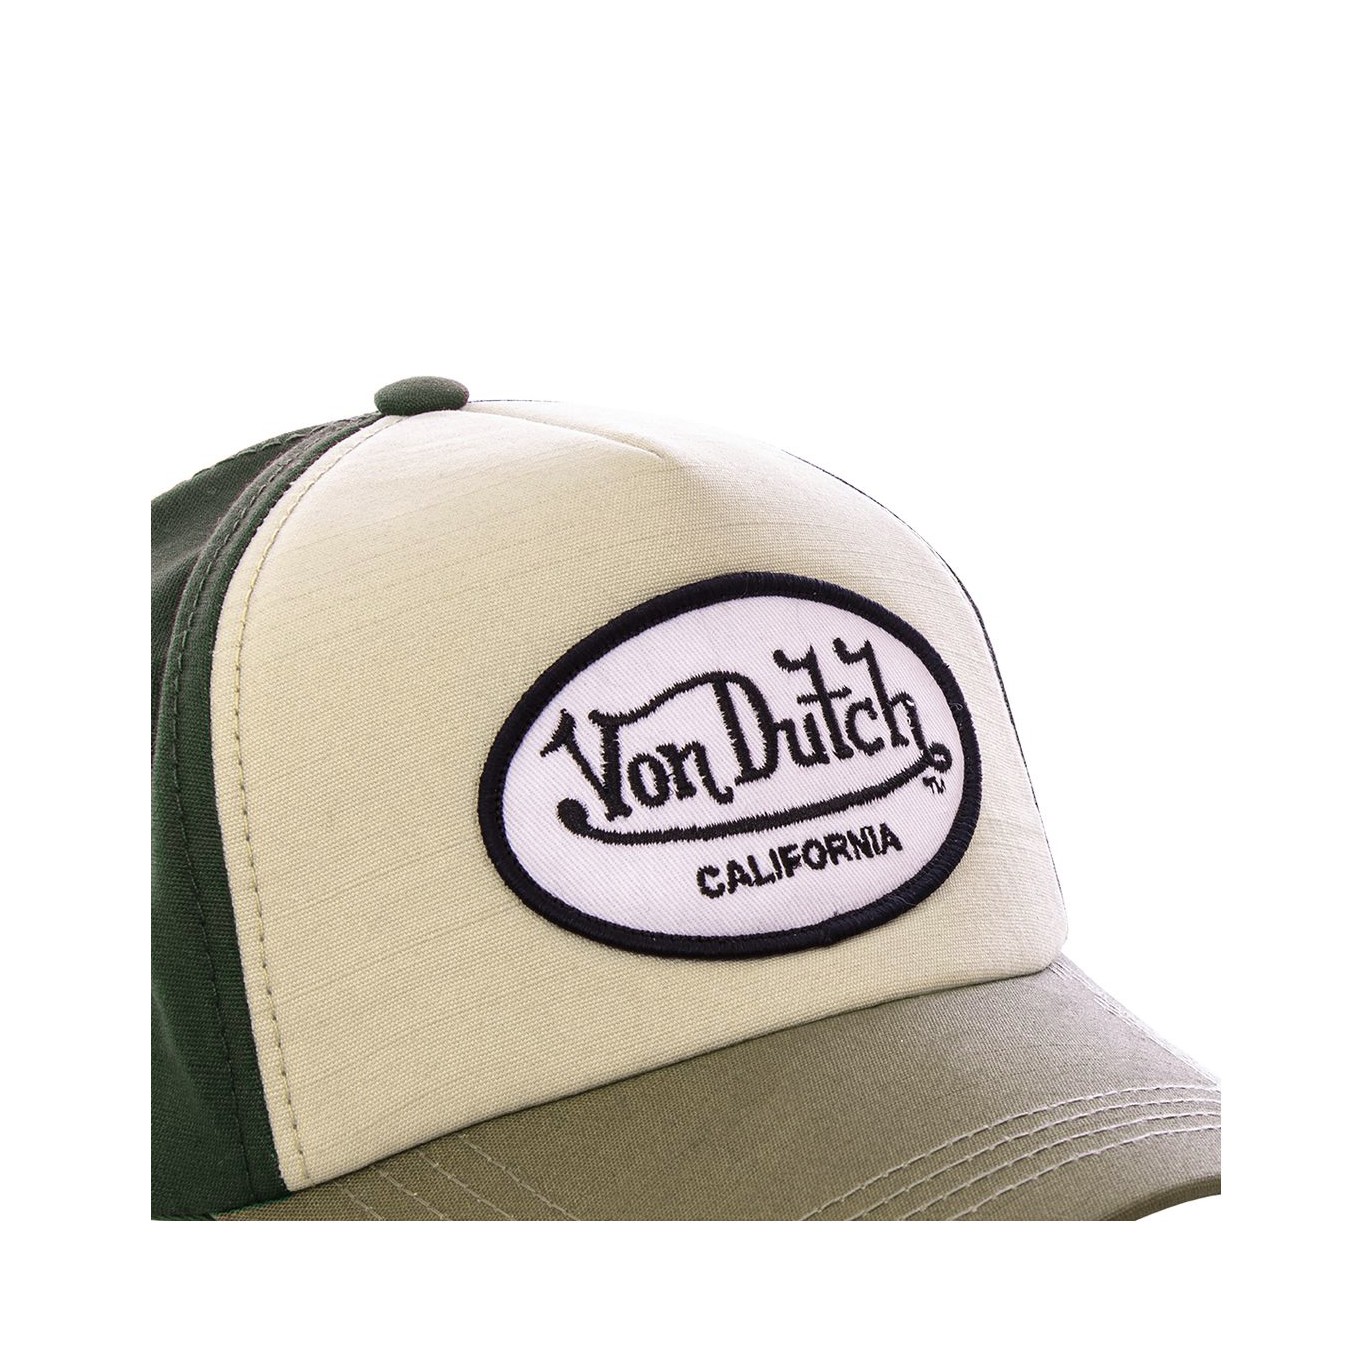 Von Dutch baseball Jacks brown cap - Von Dutch